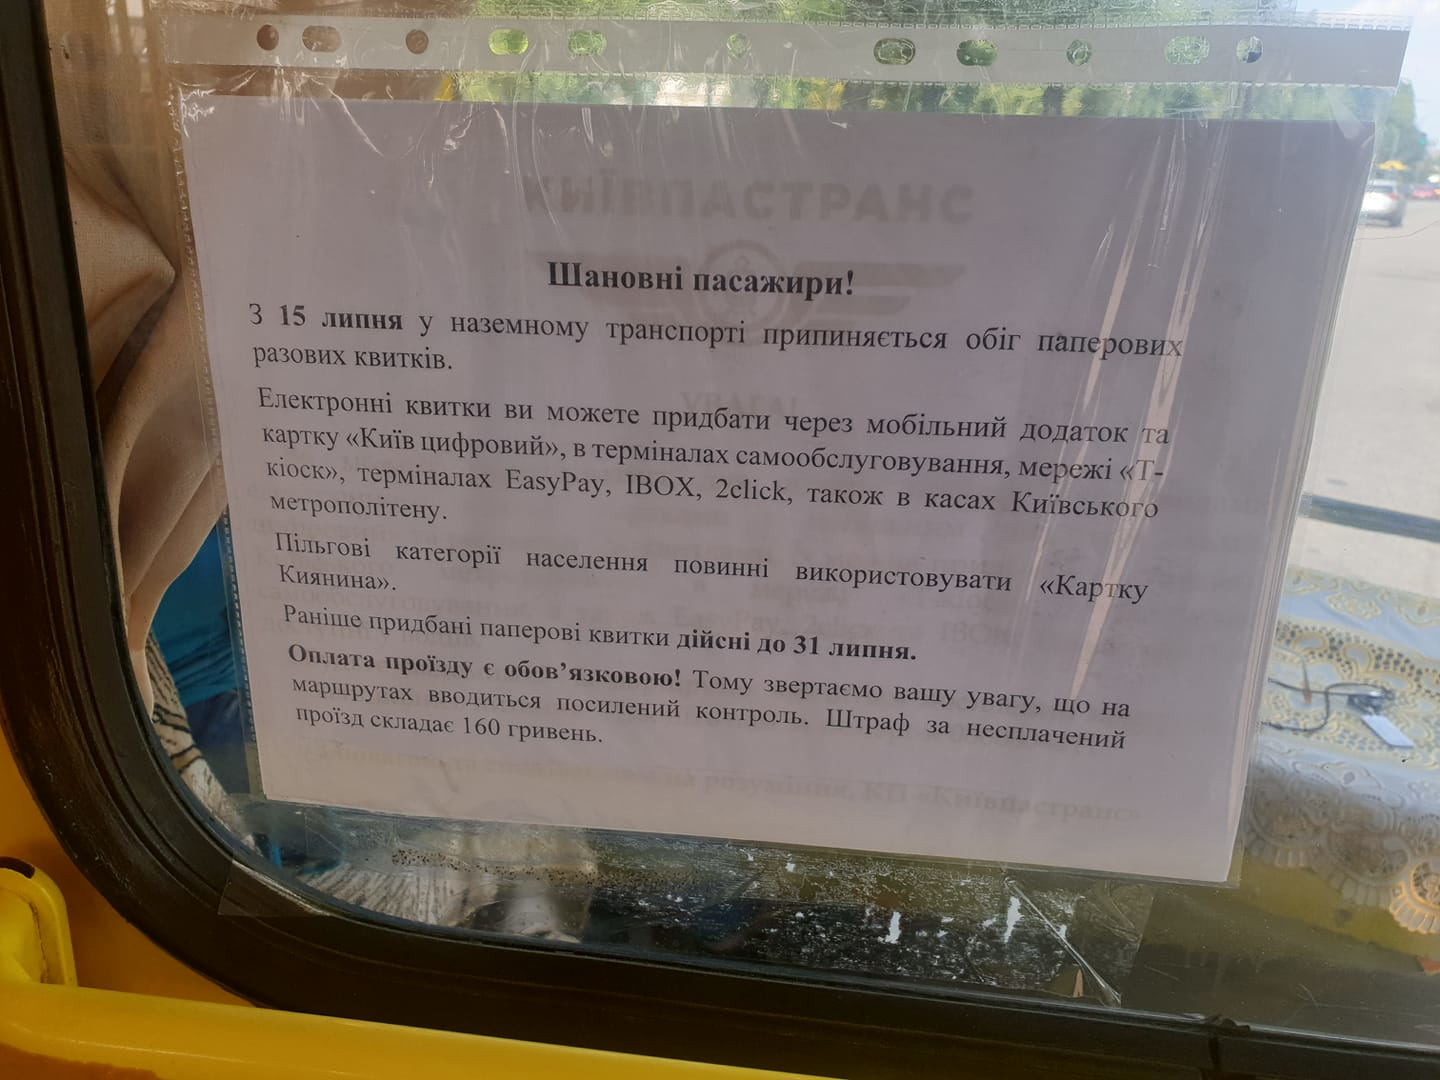 У тролейбусі висить оголошення про припинення обігу паперових талонів із 15 липня